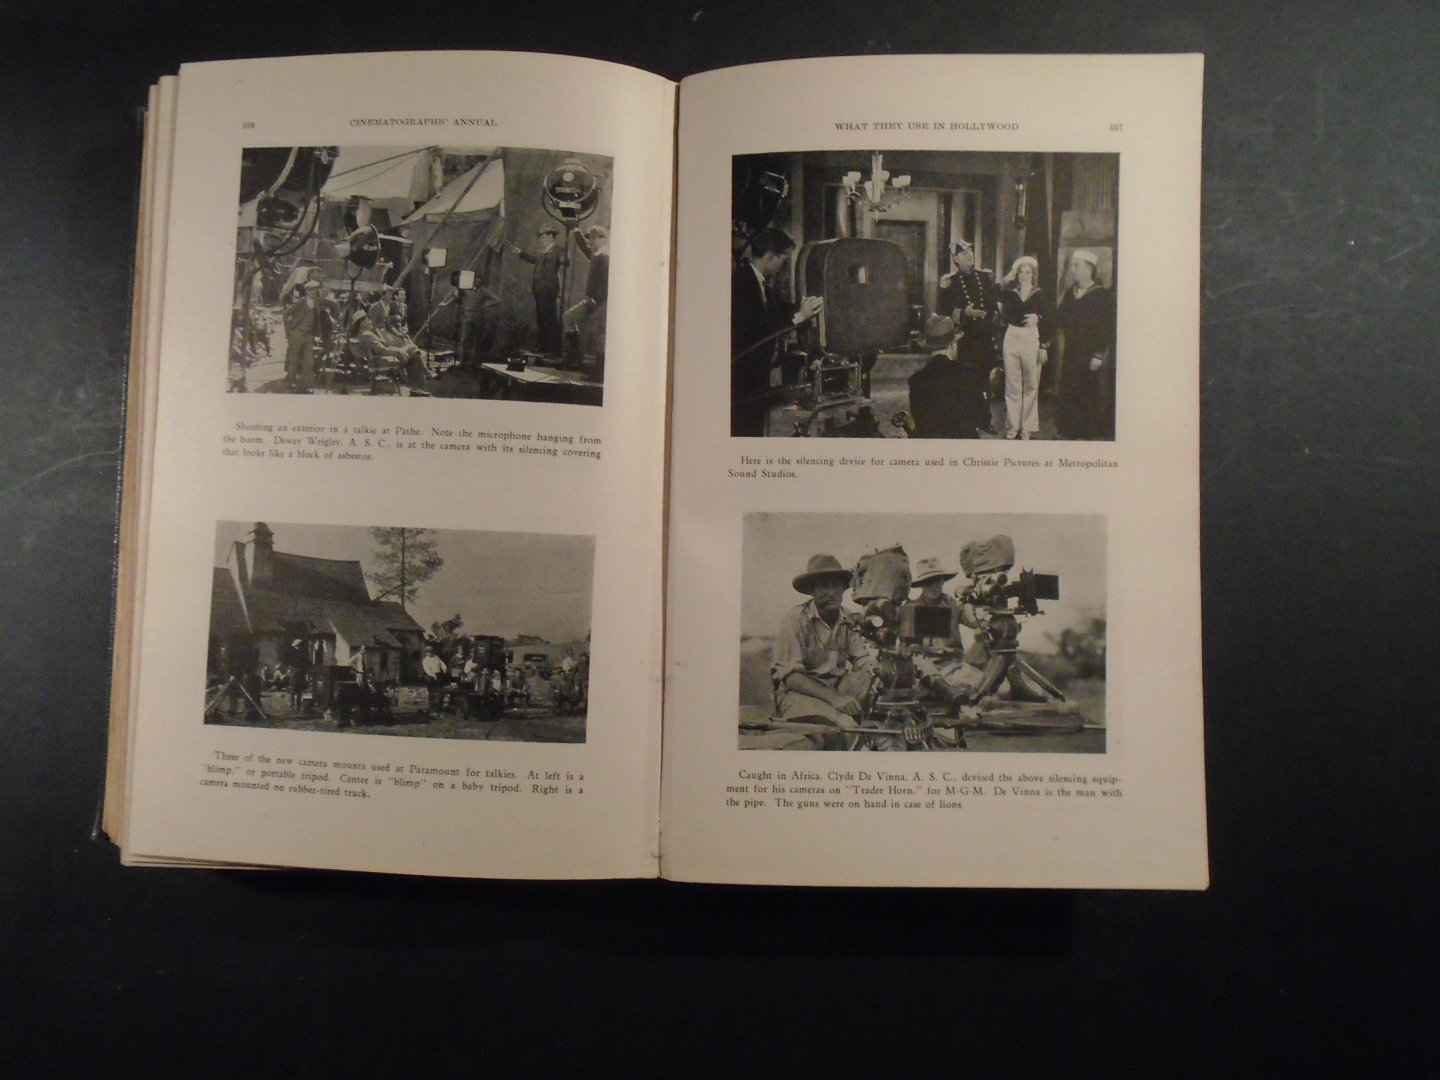 Diversen - Cinematographic Annual 1930 .